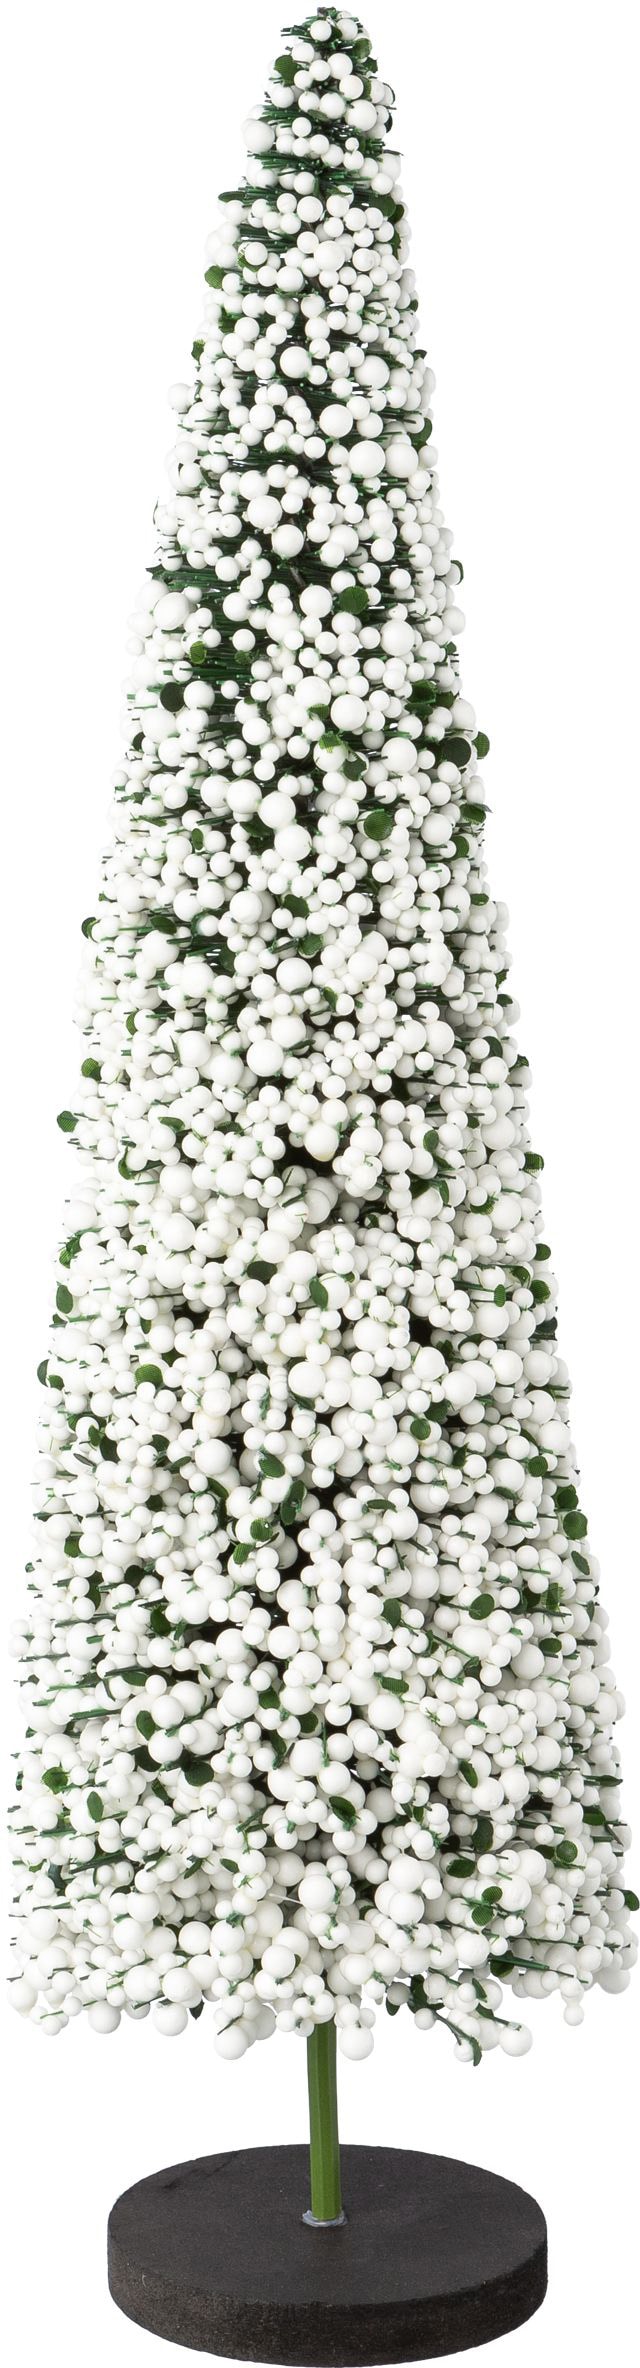 Creativ deco Dekobaum »Weihnachtsdeko«, auf hochwertiger Holzbase, mit Perlen verziert, Höhe 50 cm